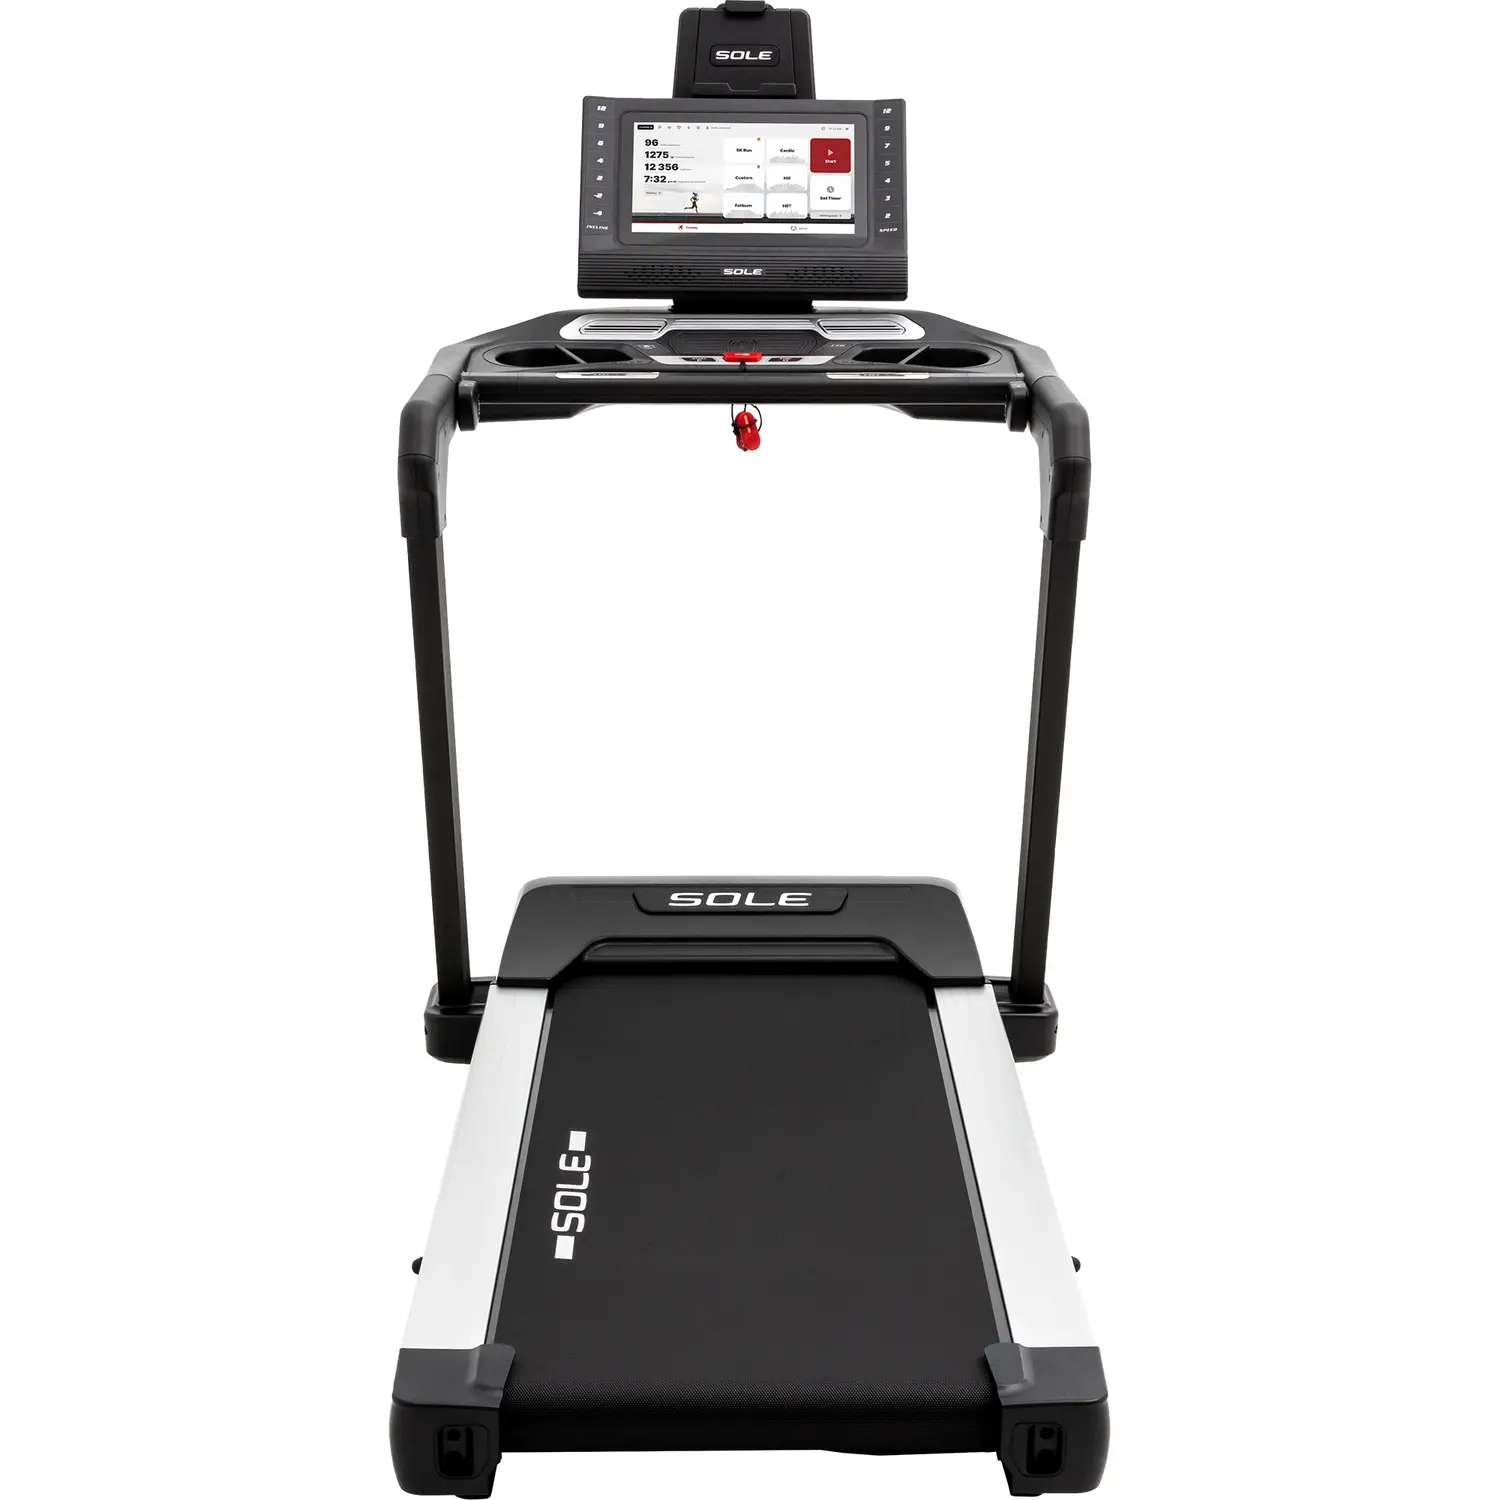 tt8 sole touch screen treadmill latest model